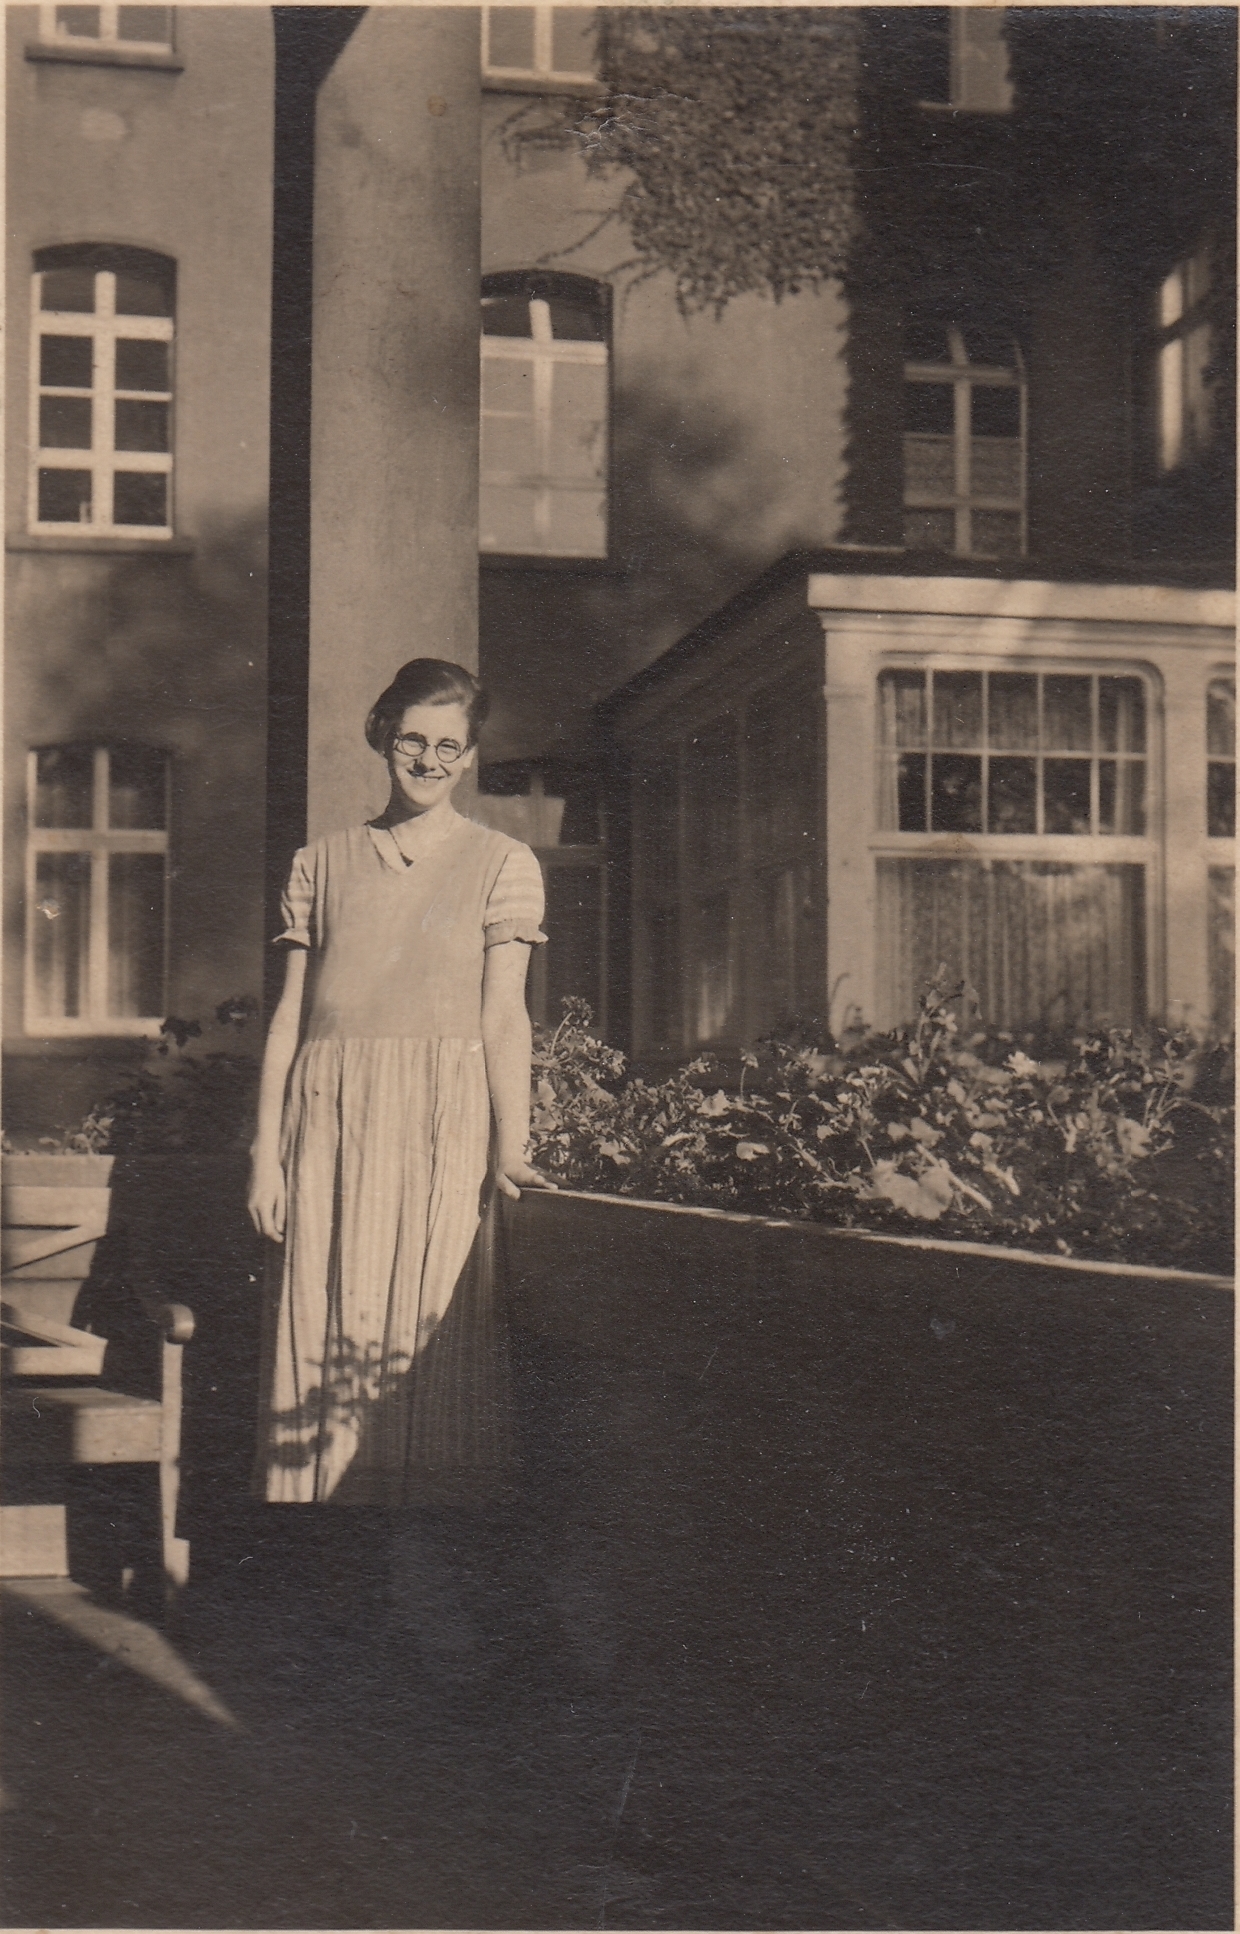 Anna lächelt. Sie trägt ein Kleid und eine Brille. Im Hintergrund ein Gebäude. Rechts neben Anna ein erhöhtes Beet. Auf dessen Umgrenzung stützt sie ihre Hand. Das Foto ist schwarz-weiß.